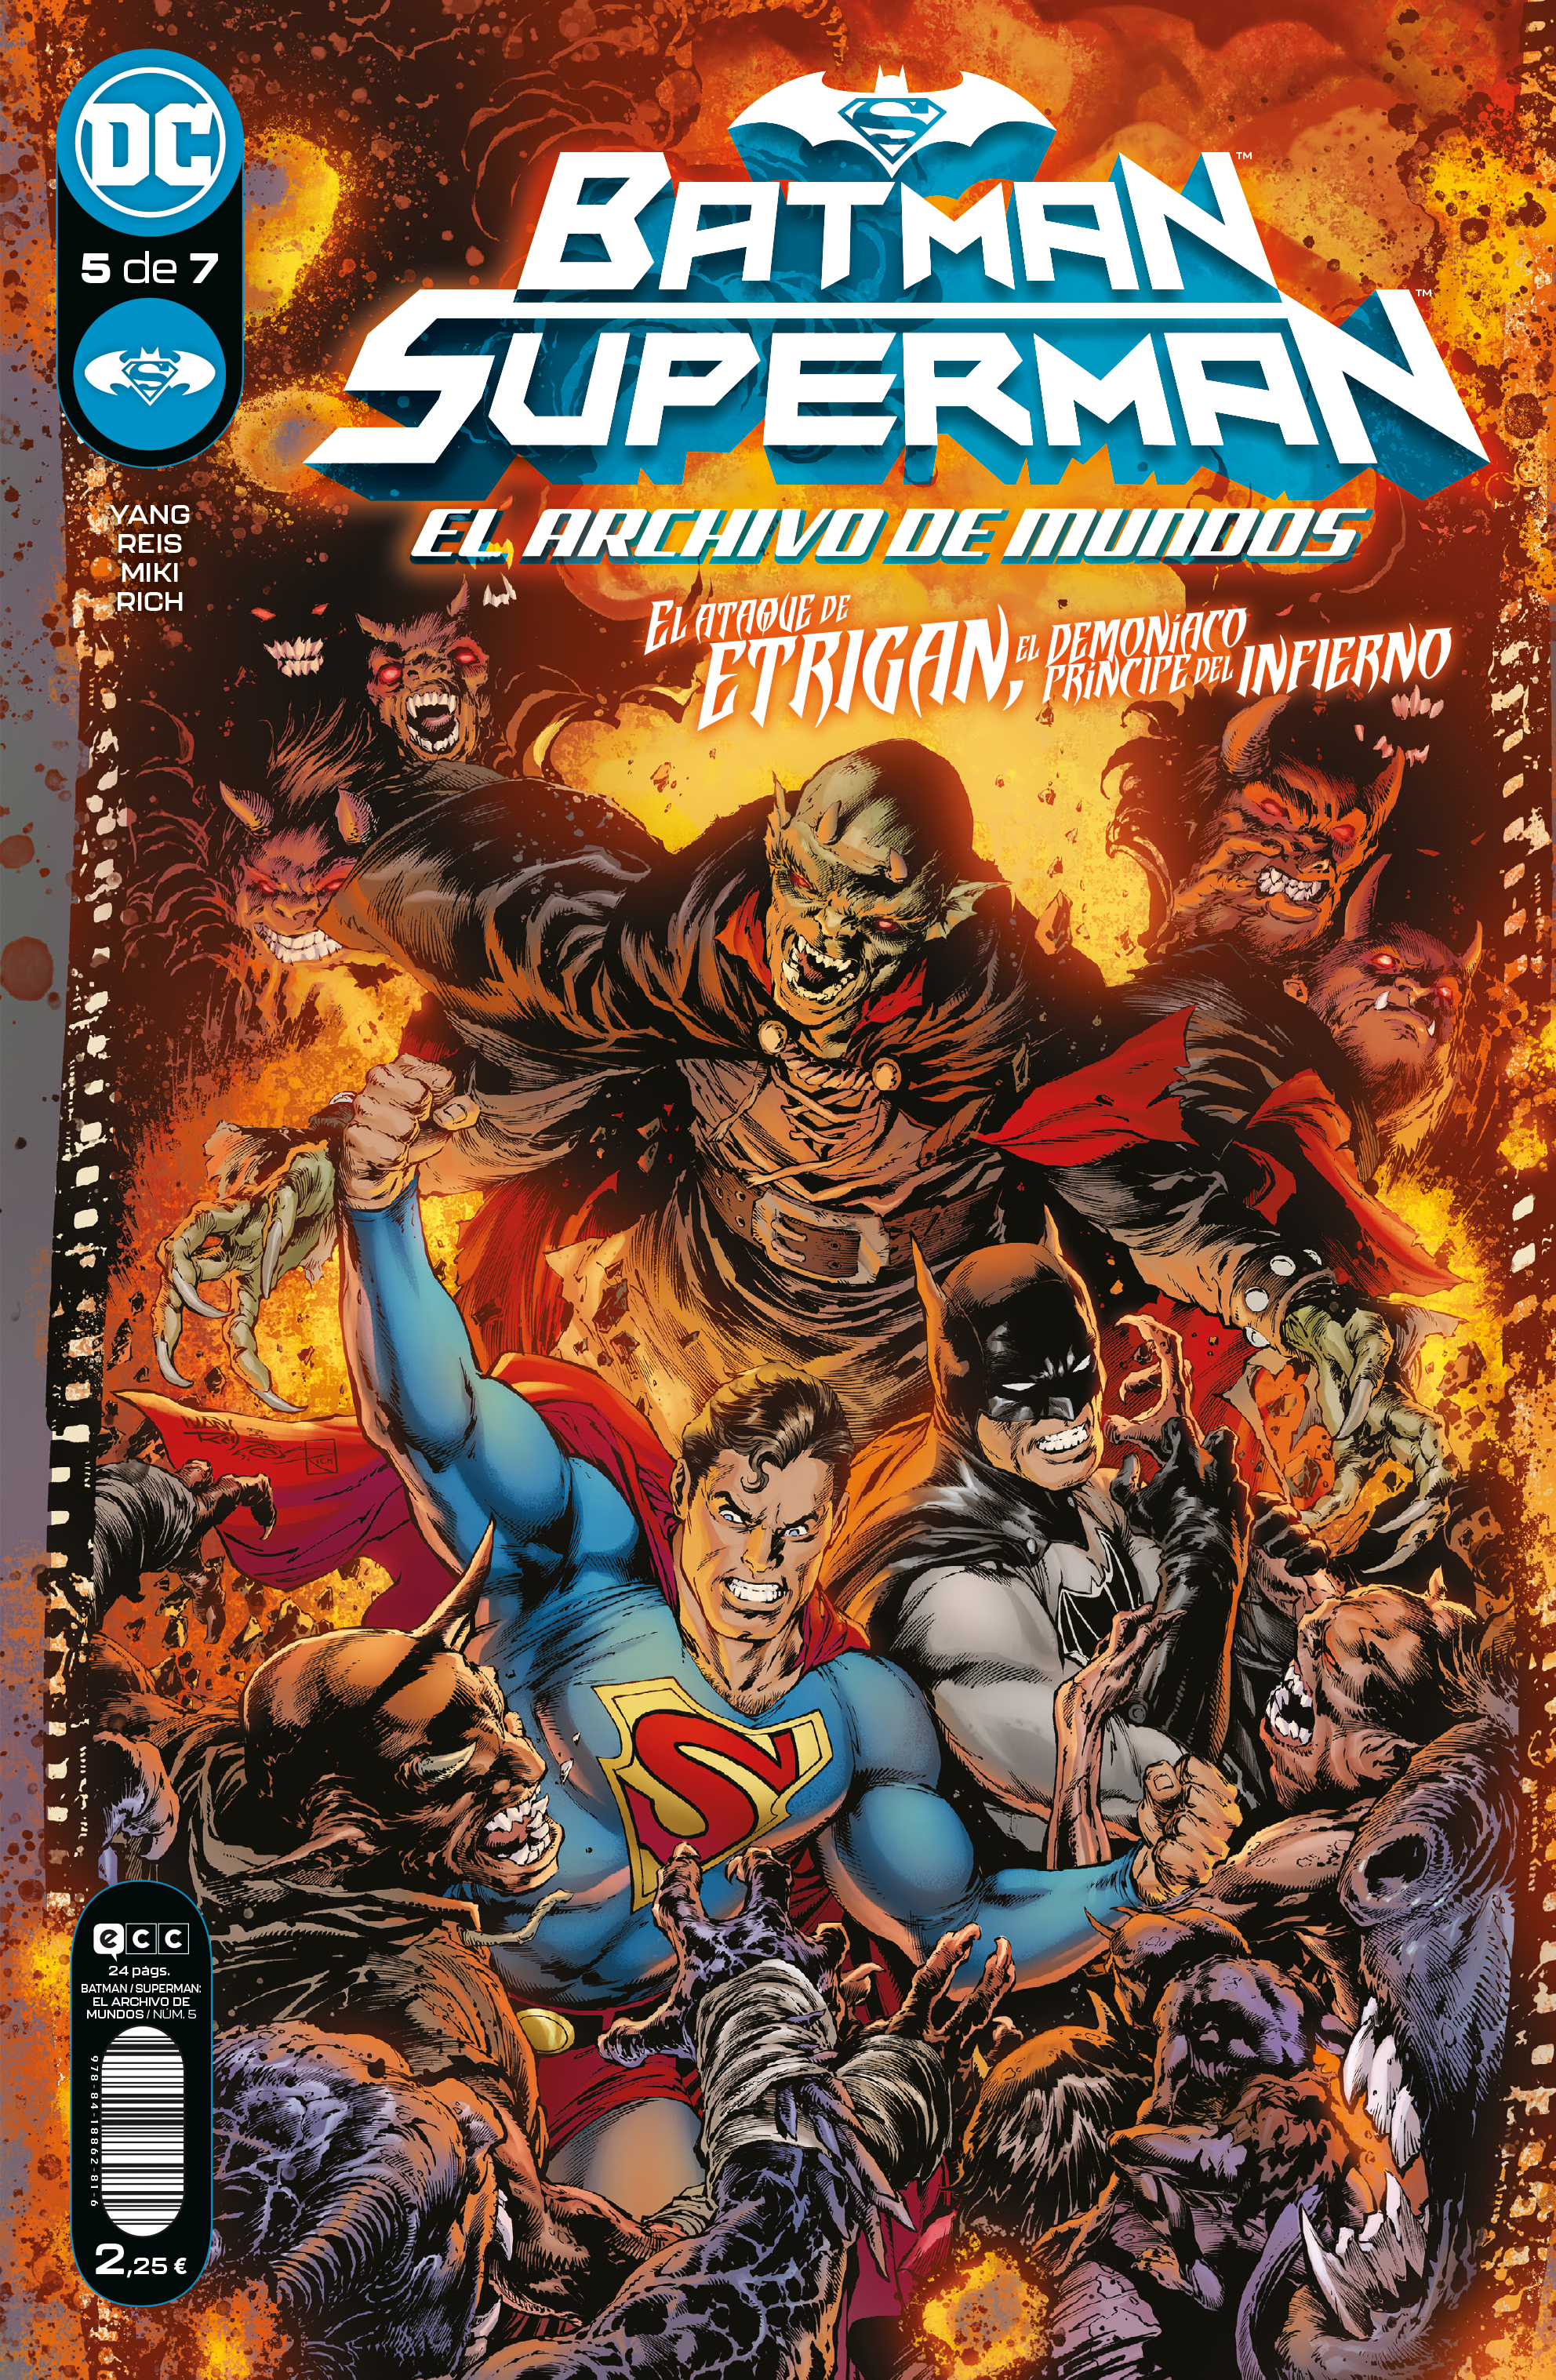 Batman/Superman: El archivo de mundos #5 (de 7)